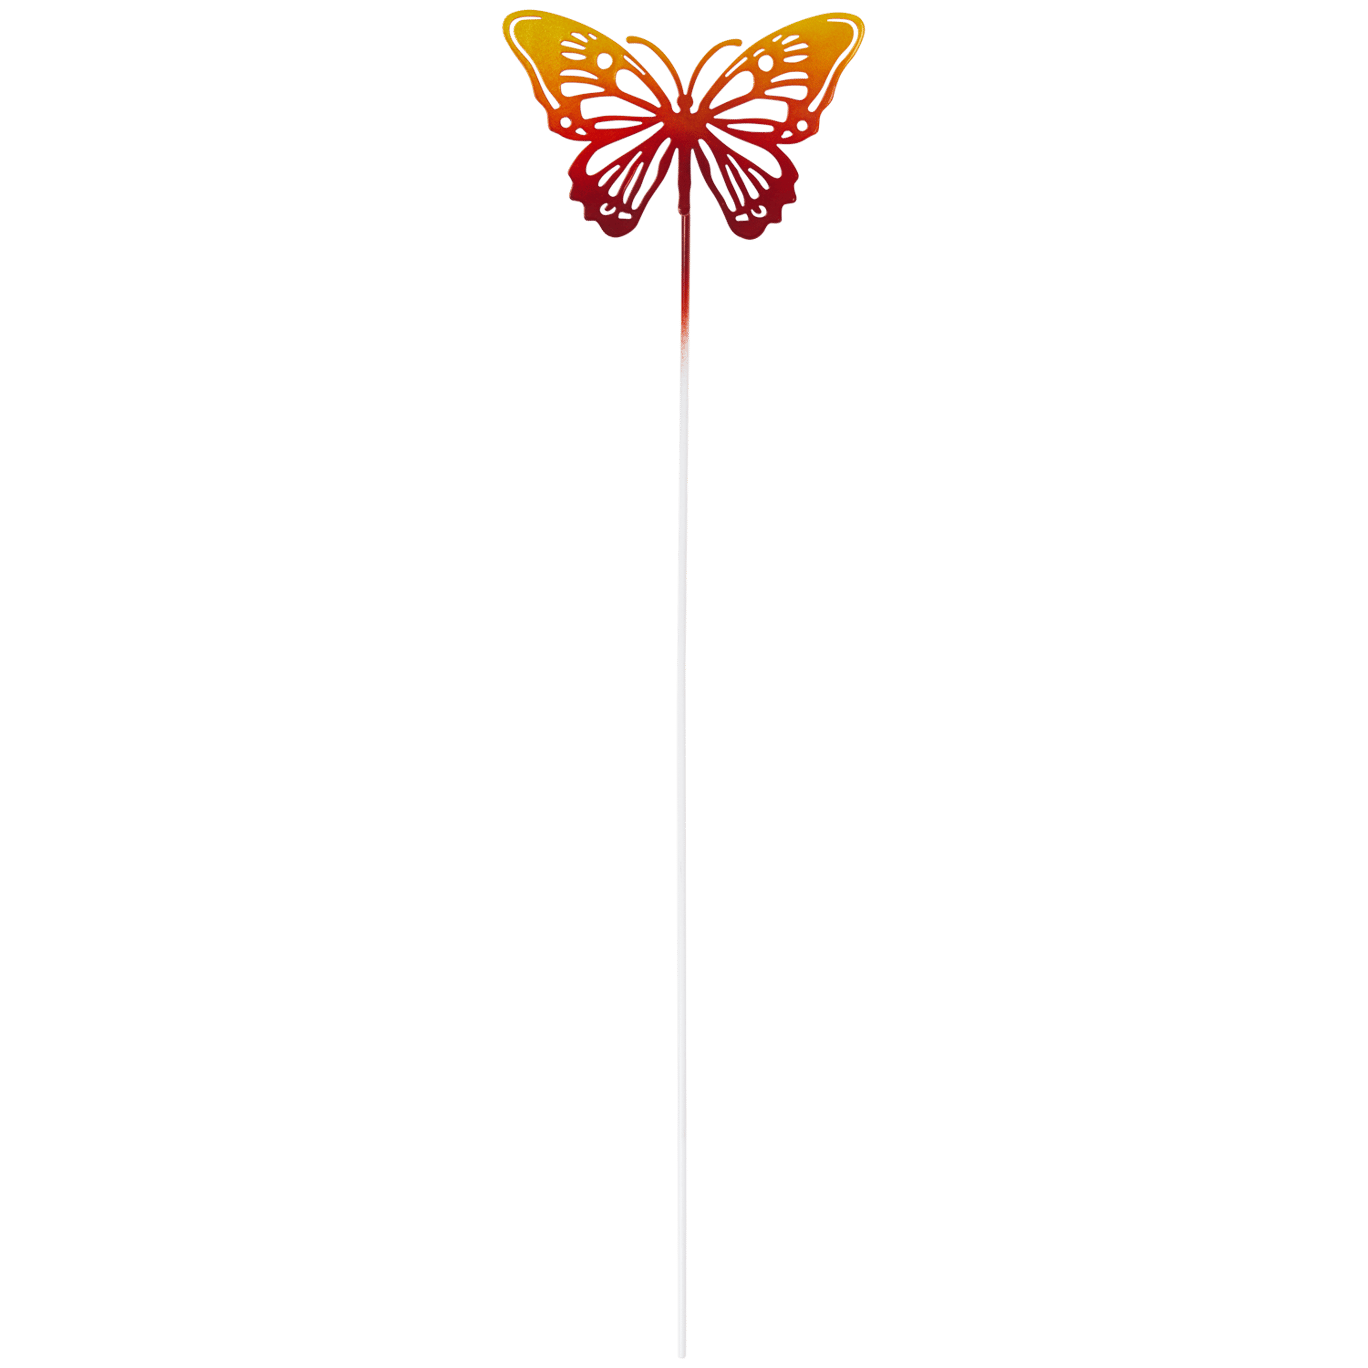 Metallic-Gartenstecker mit Schmetterling